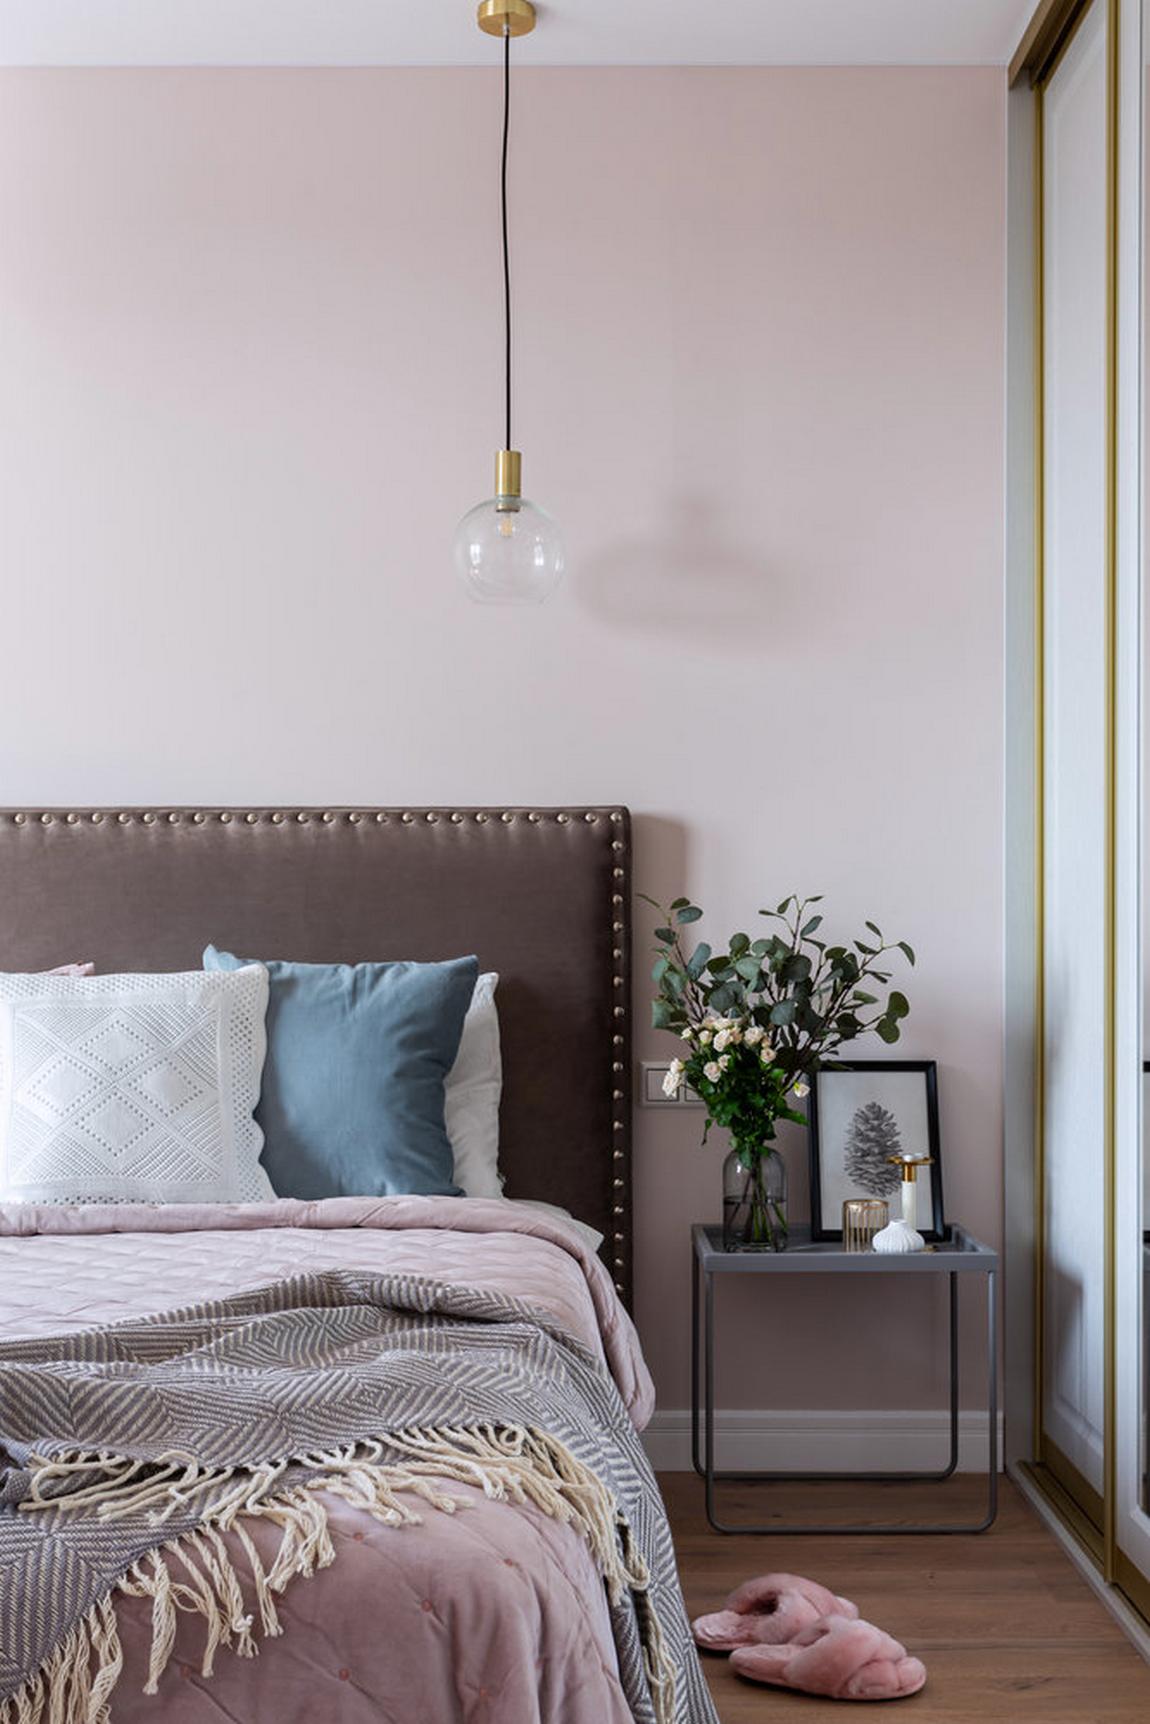 Táp đầu giường có thiết kế cực kỳ đơn giản, đủ để một lọ hoa tươi xinh xắn, nến thơm, khung ảnh, điện thoại,... Phía trên là đèn thả trần hình cầu bằng thủy tinh bởi những chi tiết mạ vàng đồng sắc sảo.